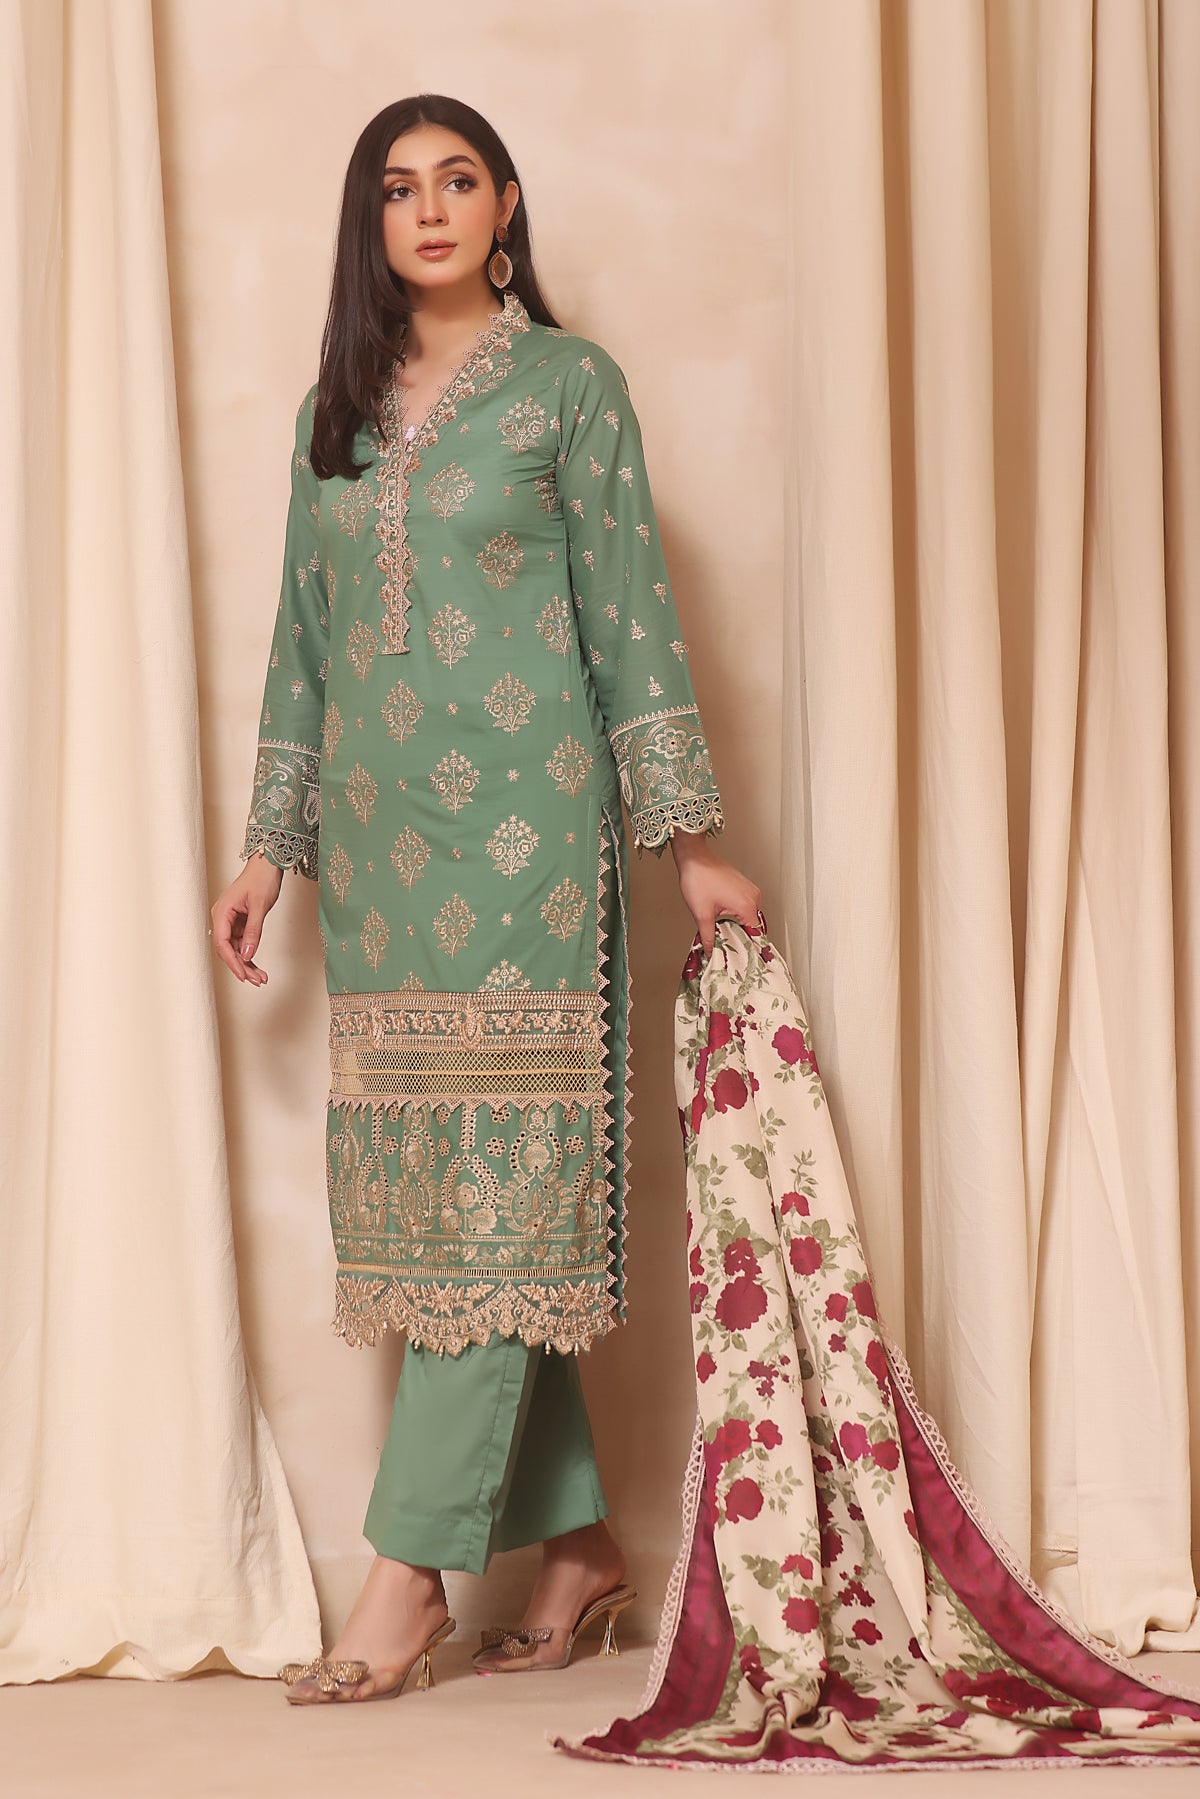 Zarra'Tunn 3 Piece Suit - Zainab Chottani